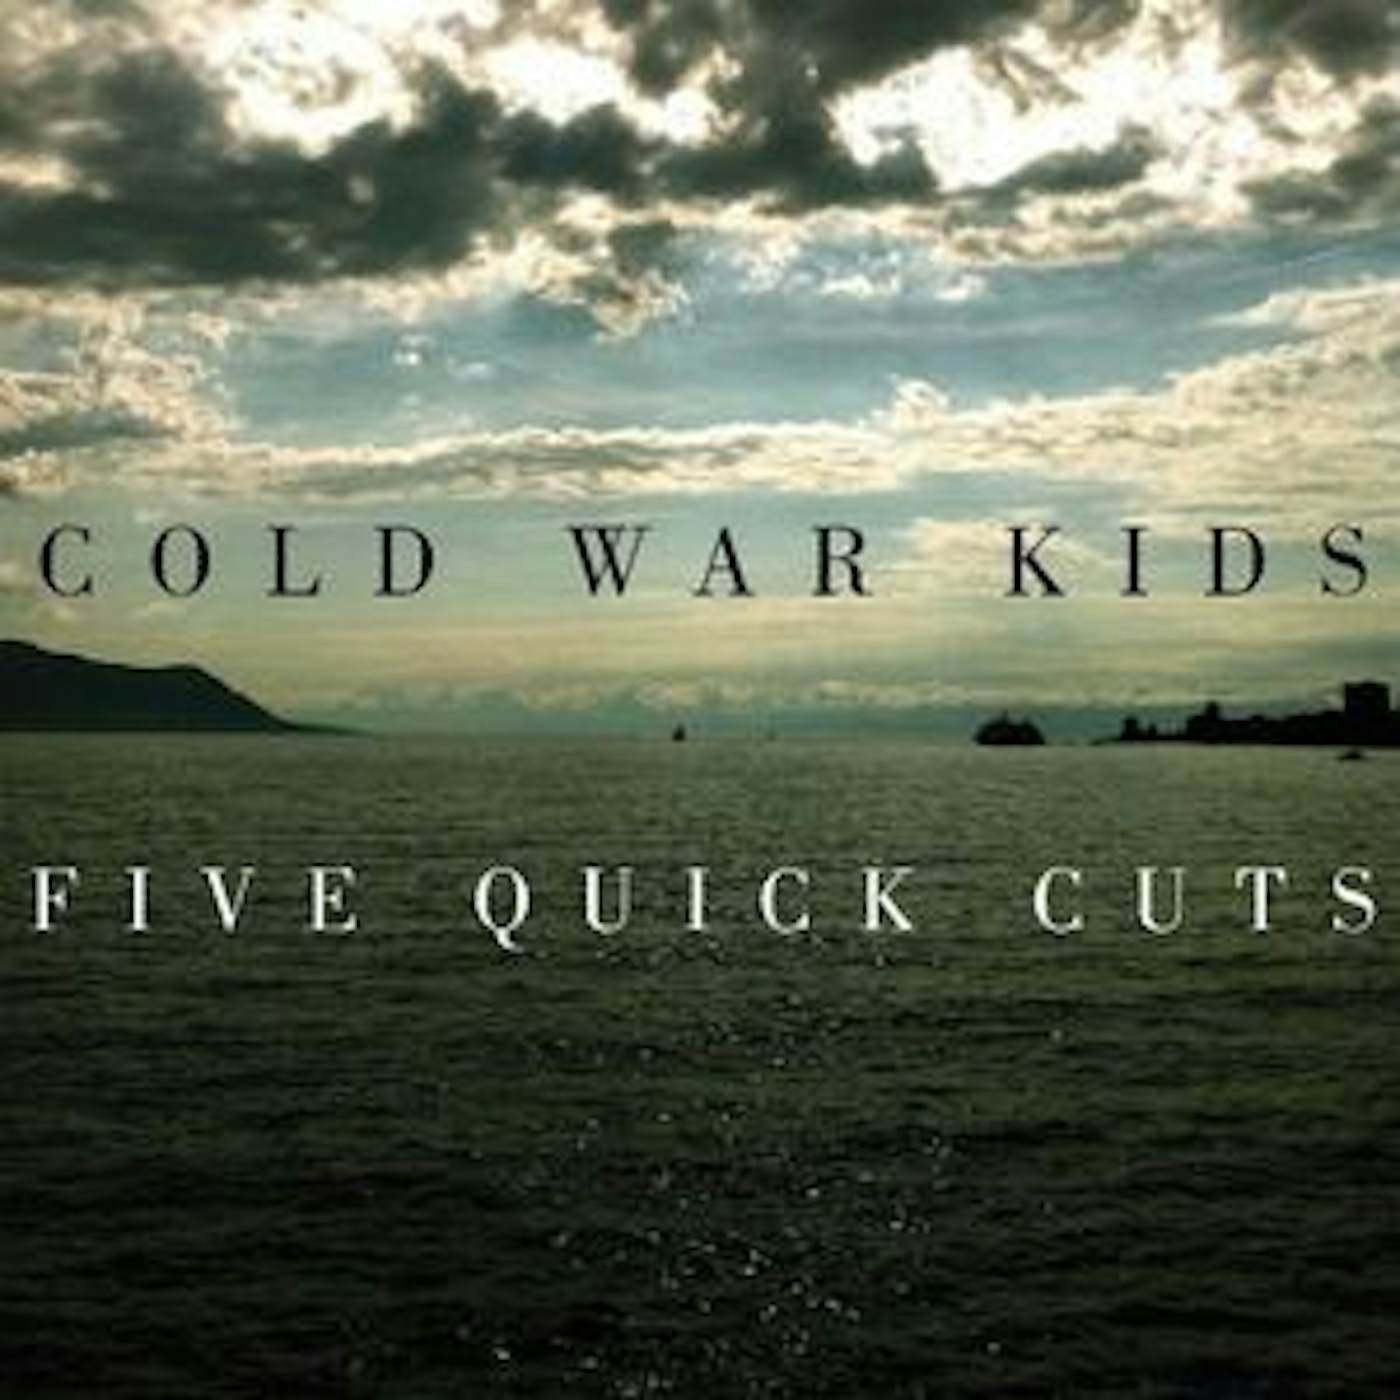 Cold War Kids Five Quick Cuts Vinyl Record